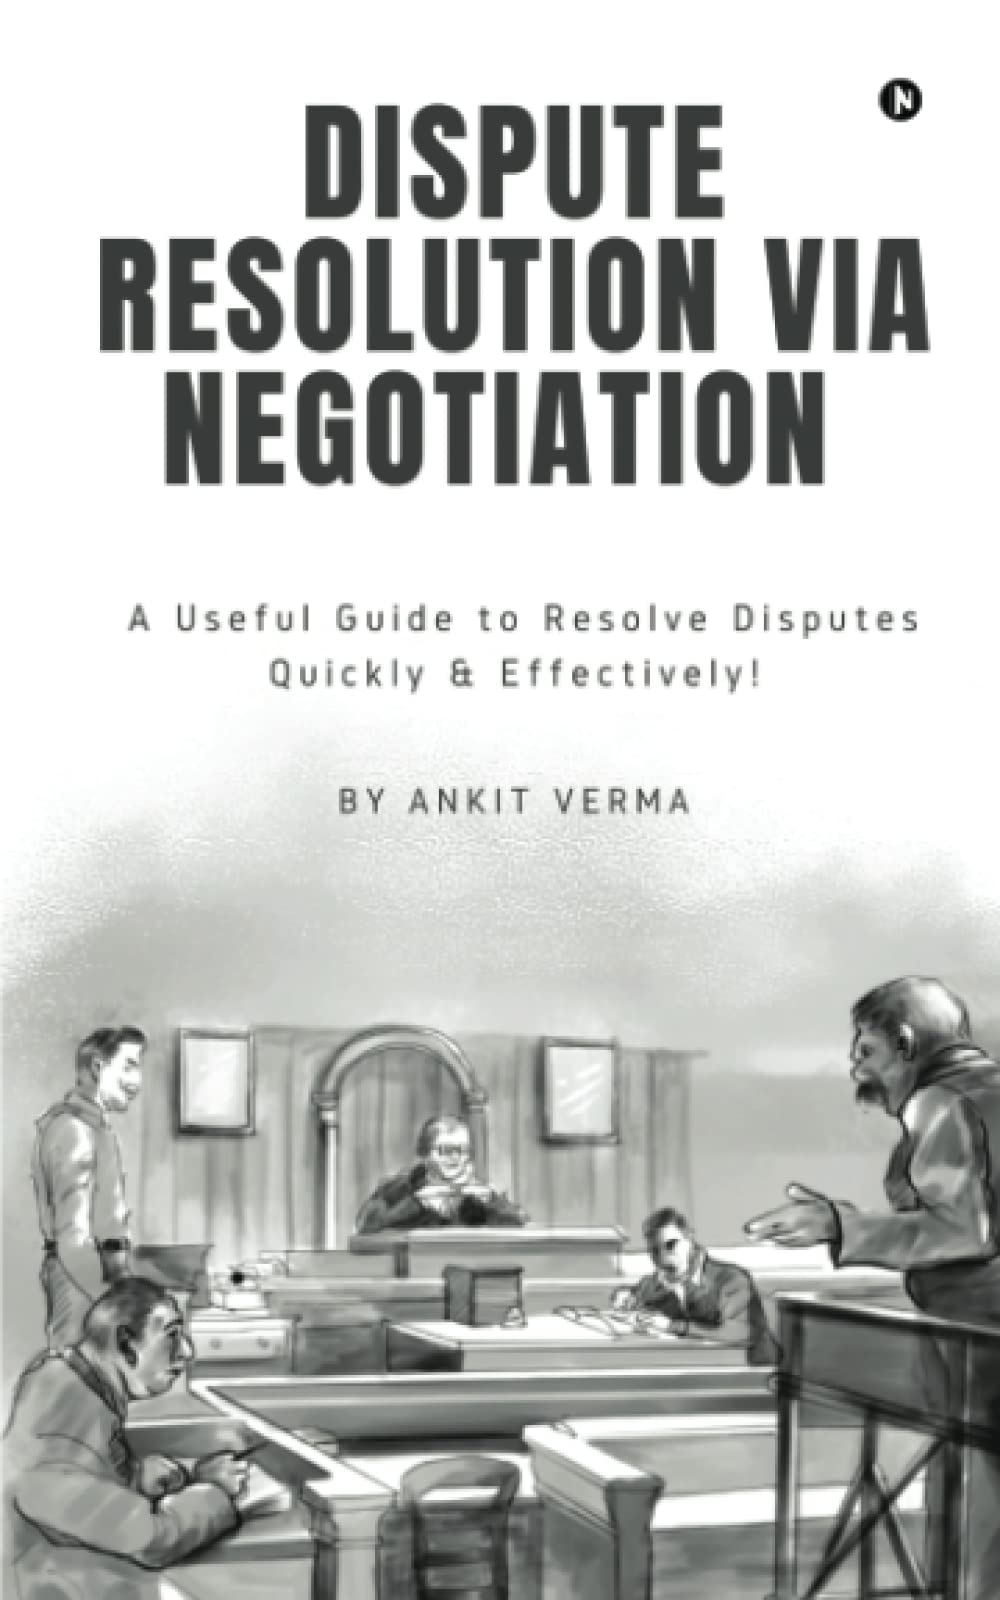 Dispute Resolution via Negotiation